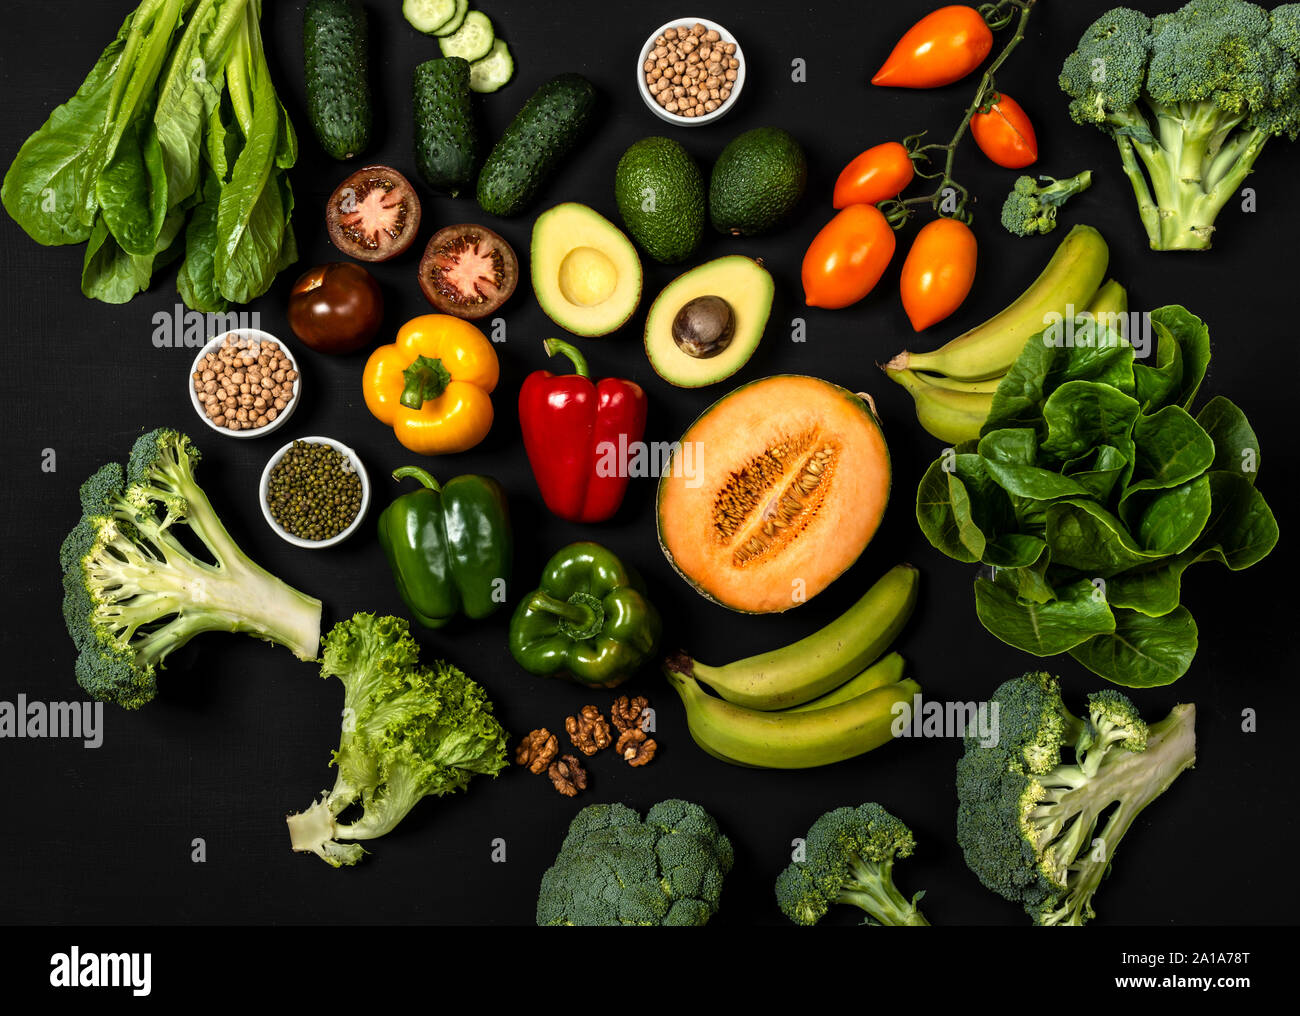 Assortiment de légumes frais bio pour la cuisine végétarienne. Vue de dessus sur fond noir. Nourriture végétalienne saine Banque D'Images